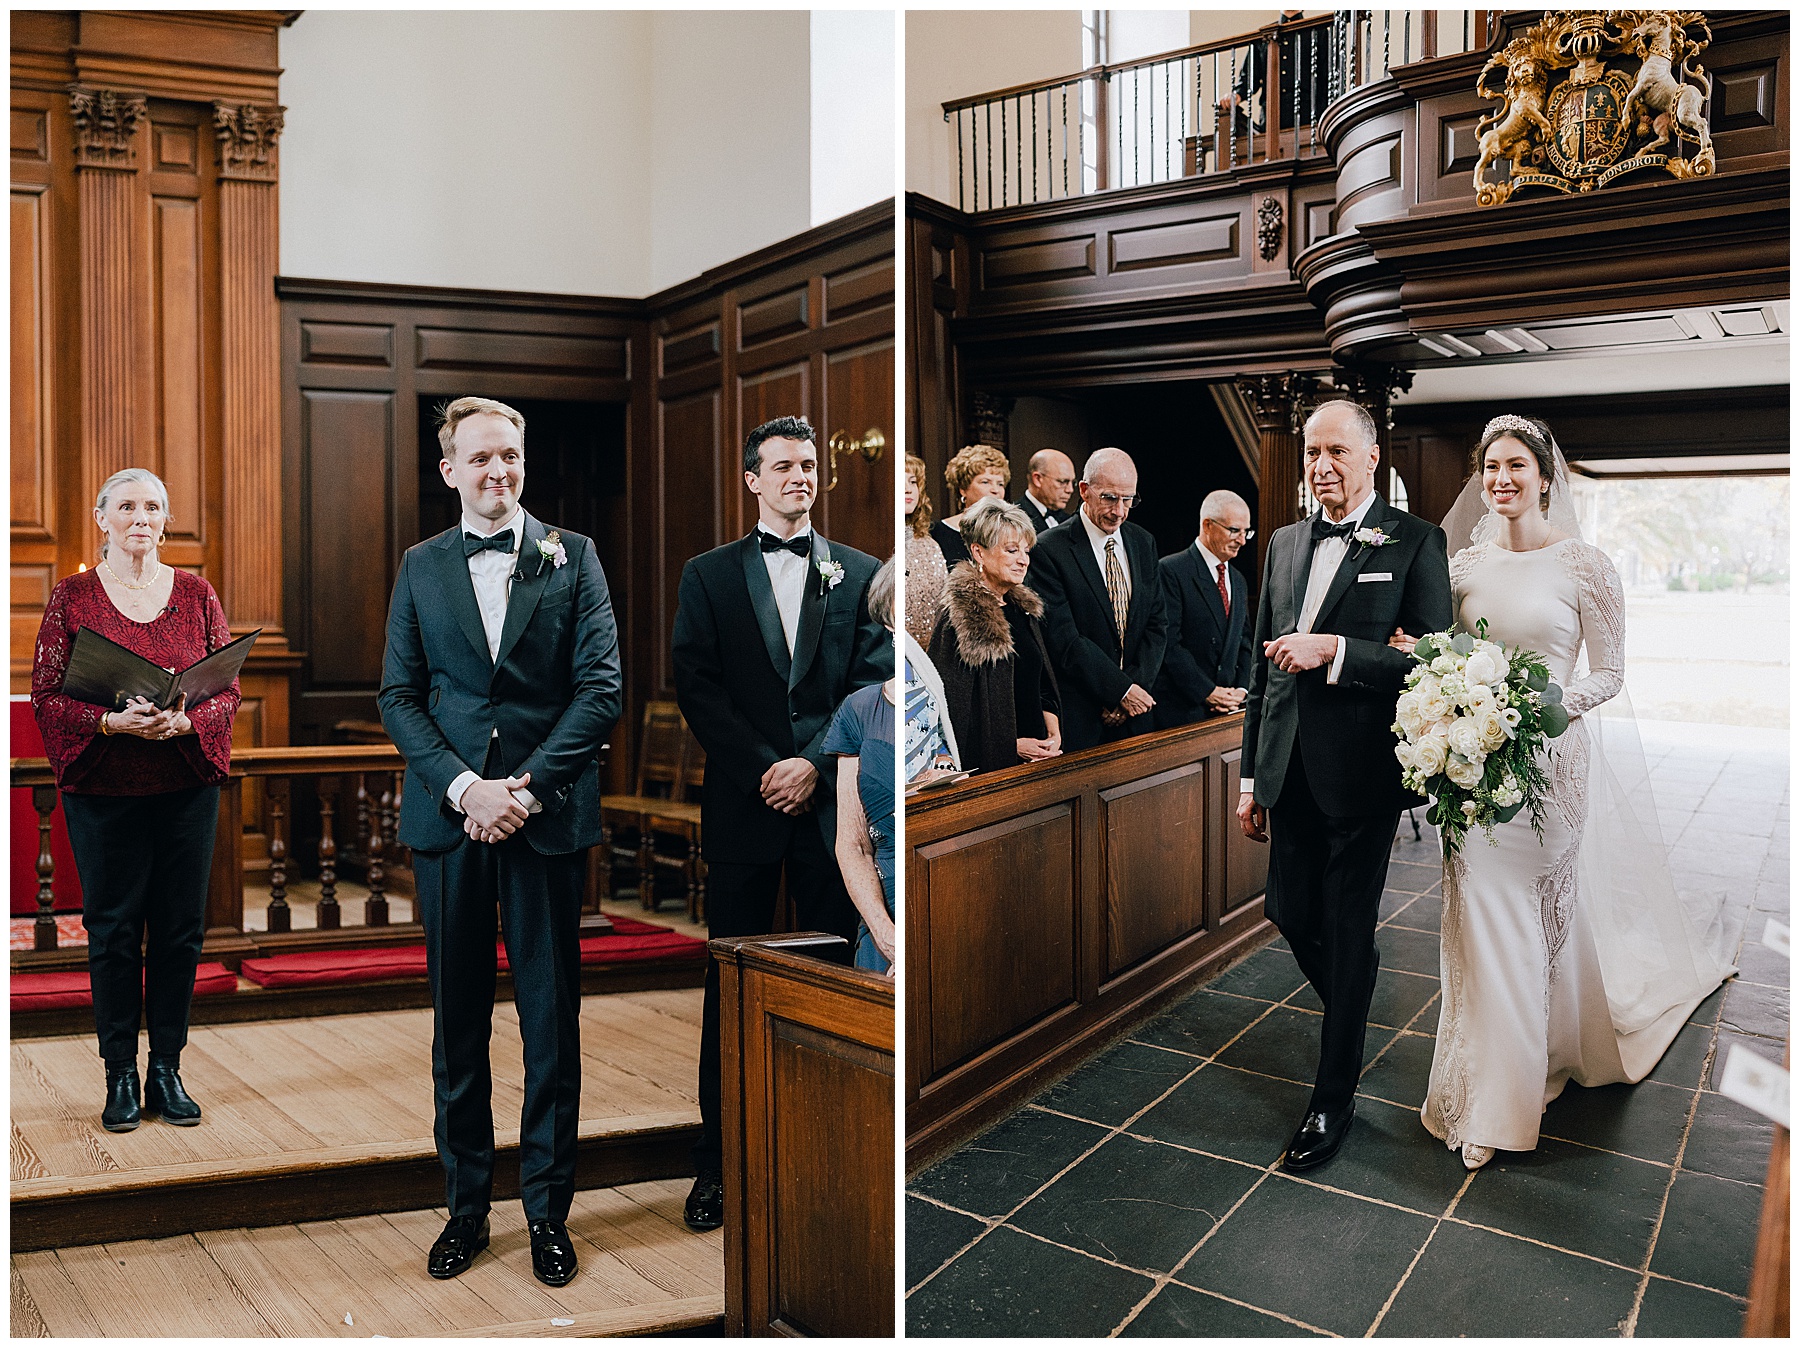 Wren Chapel Wedding by Luke and Ashley Photography 